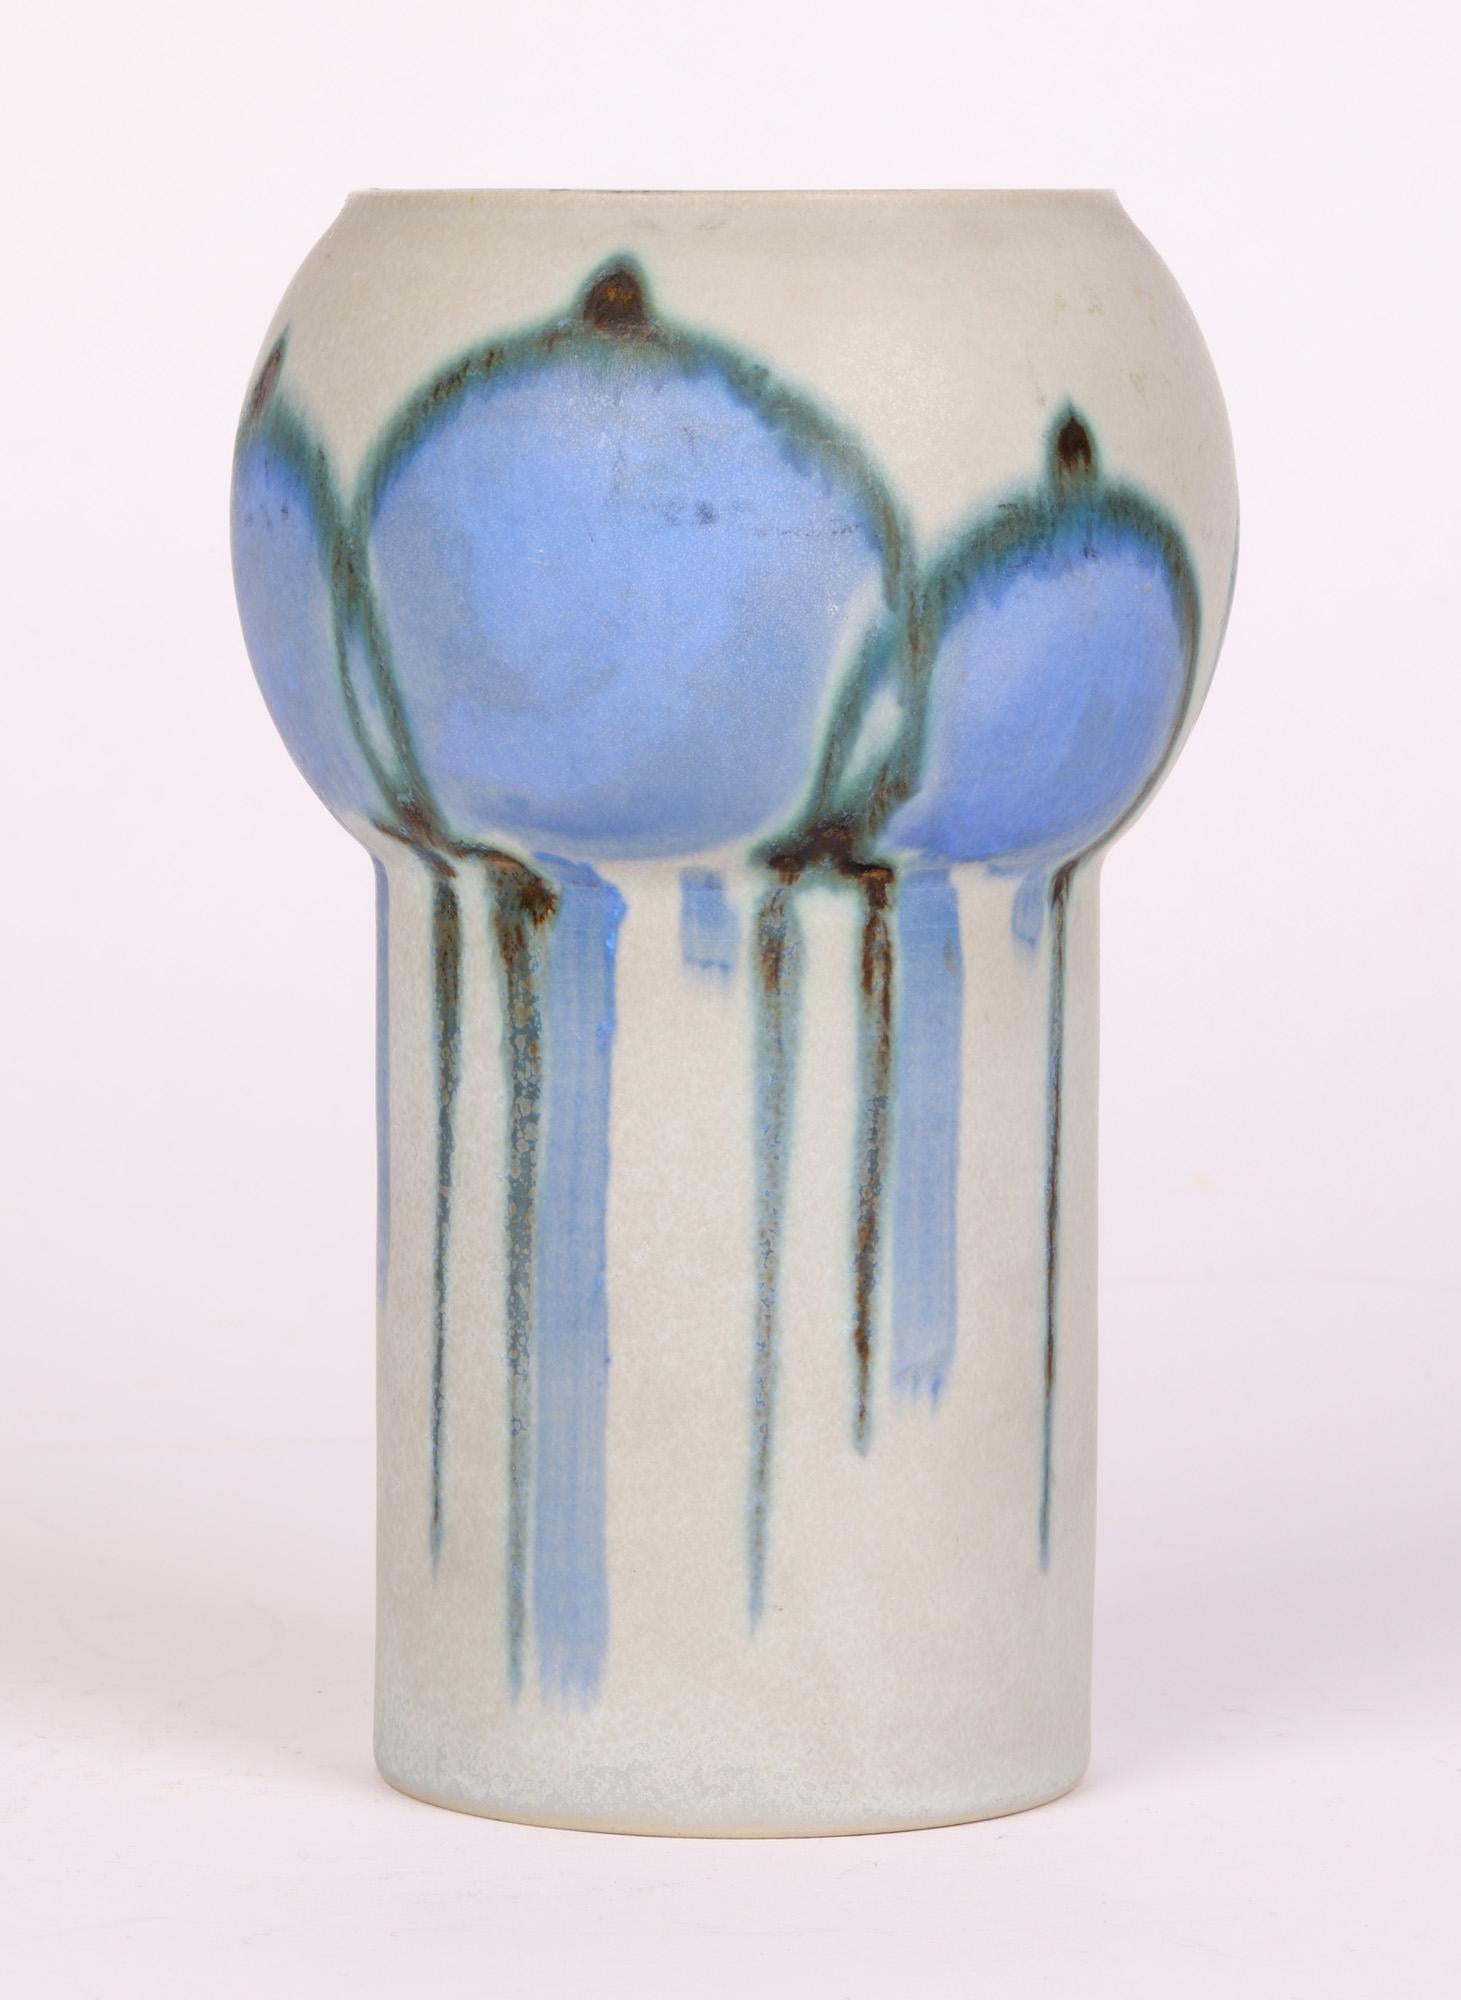 Drejar Gruppen for Rörstrand Swedish Stylized Modern Ceramic Vase, 1973 For Sale 9